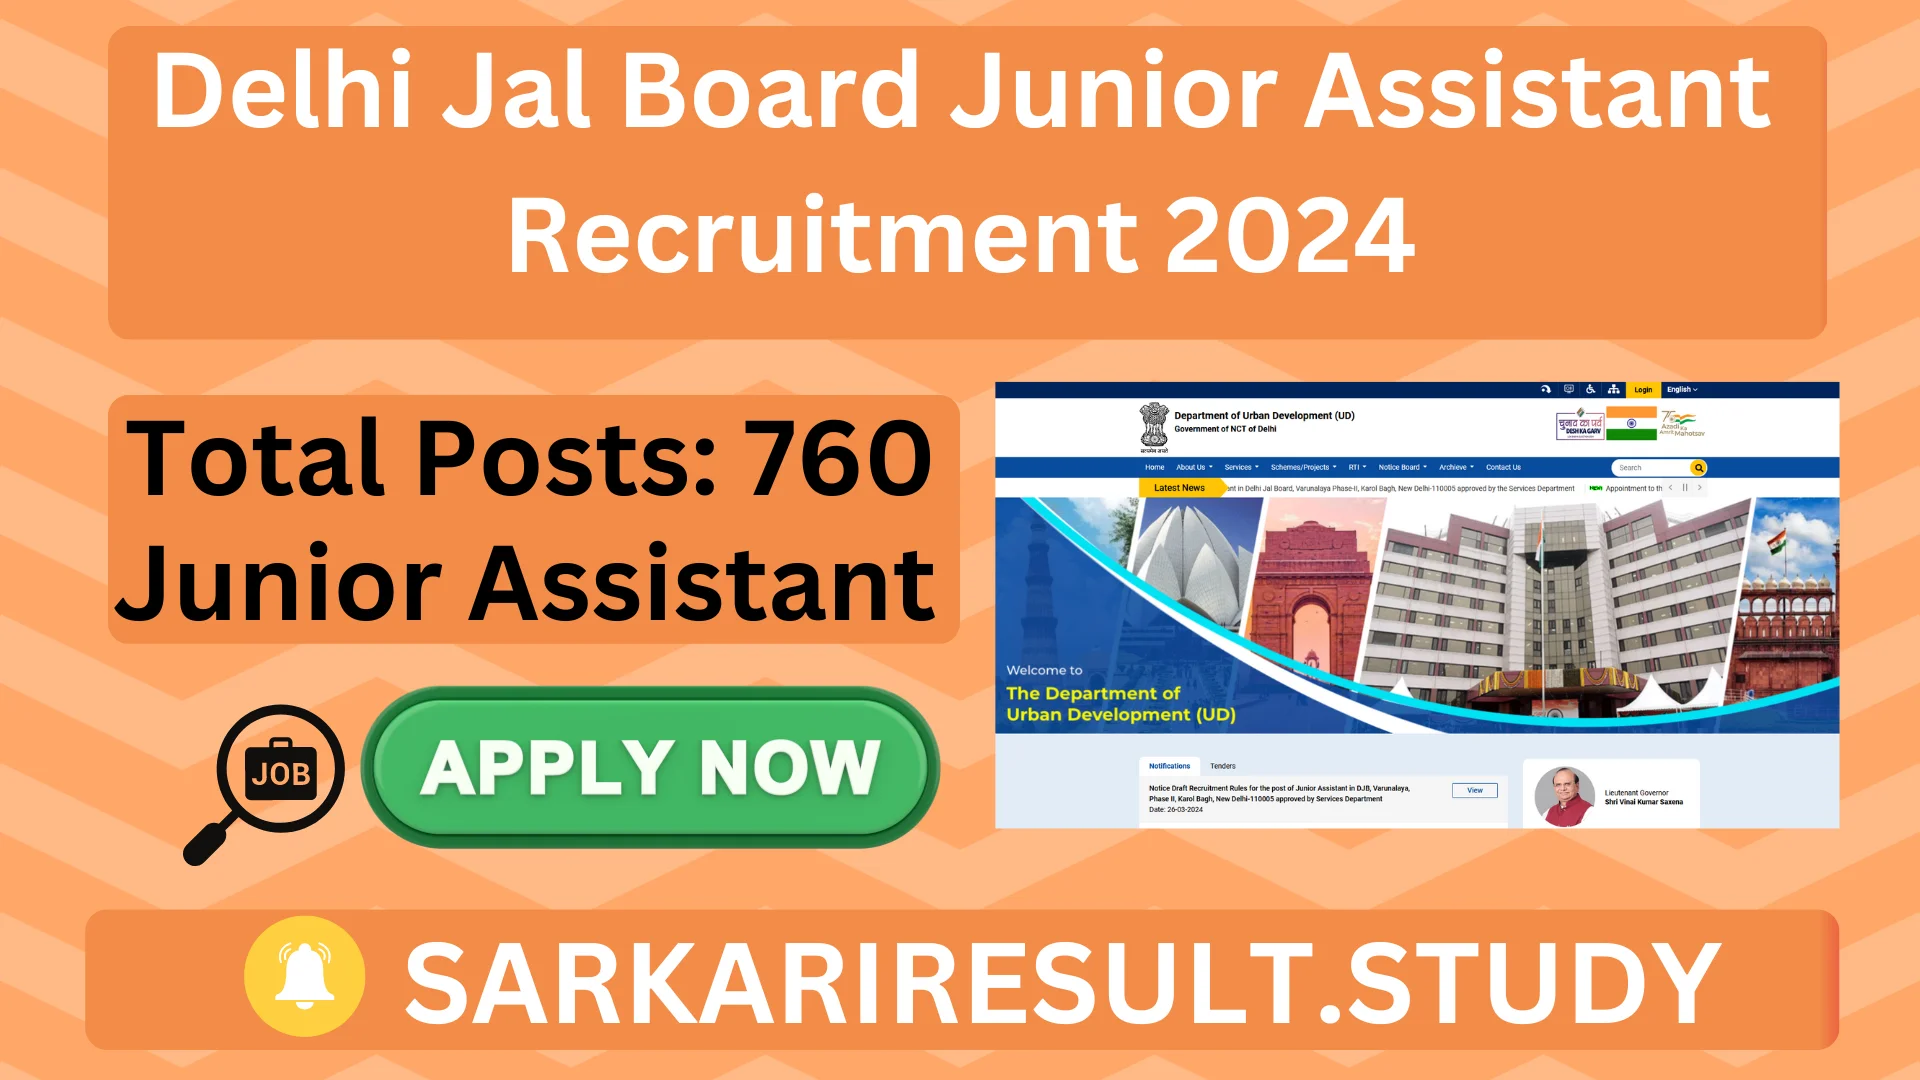 Delhi Jal Board Jr Asst. Recruitment 2024